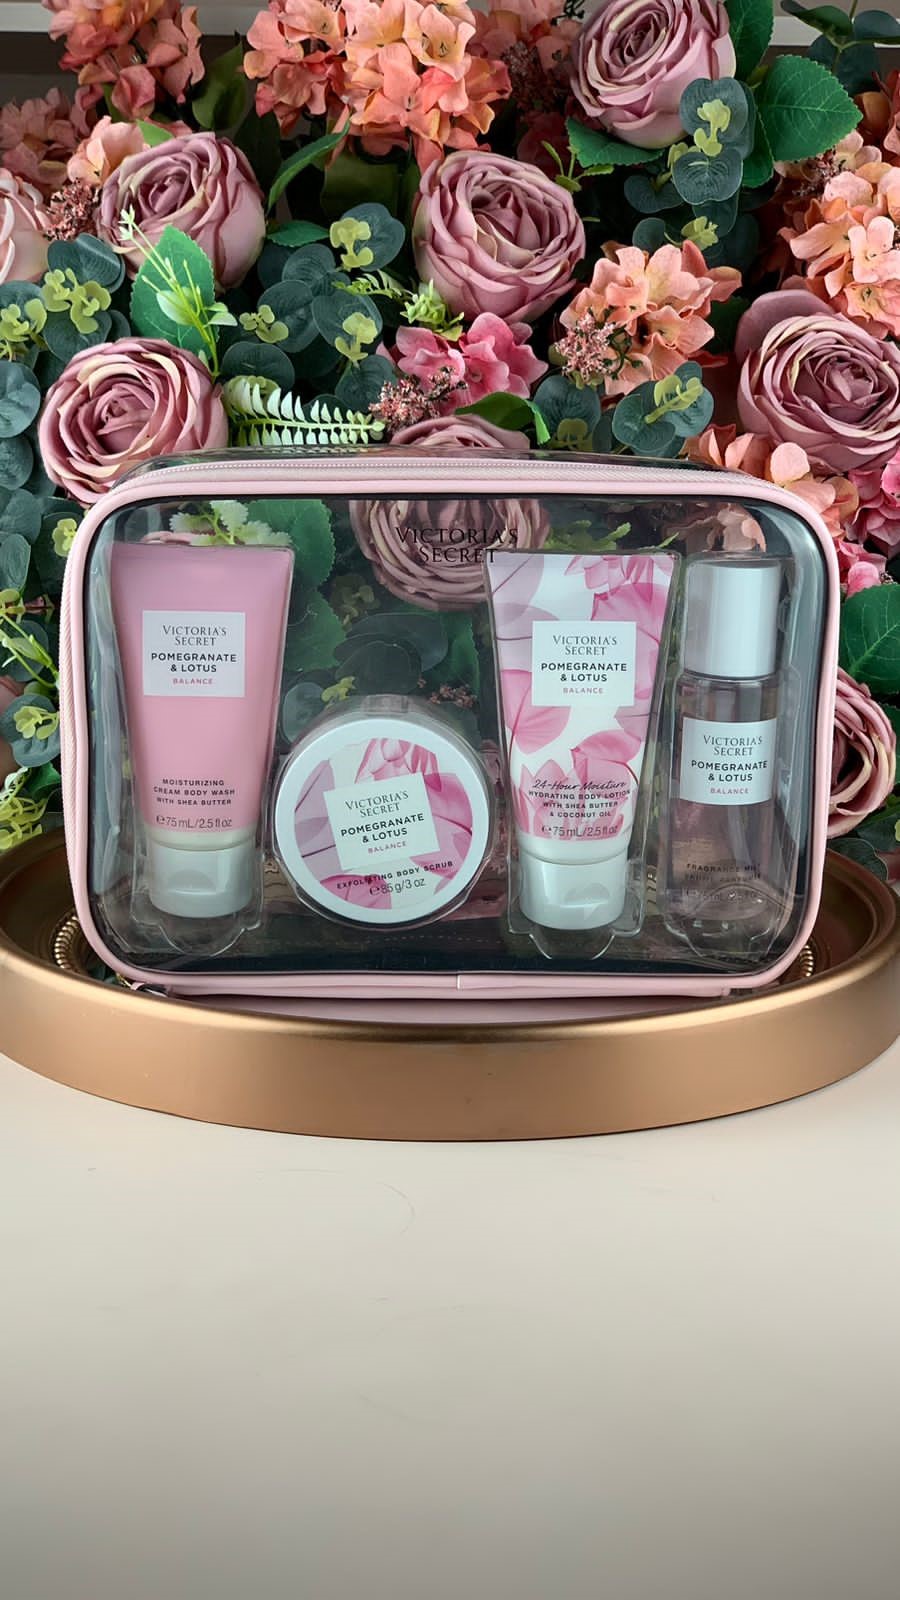 Victoria's Secret Pomegranate & Lotus Balance é uma fragrância floral -  ClauMixx Presentes Criativos